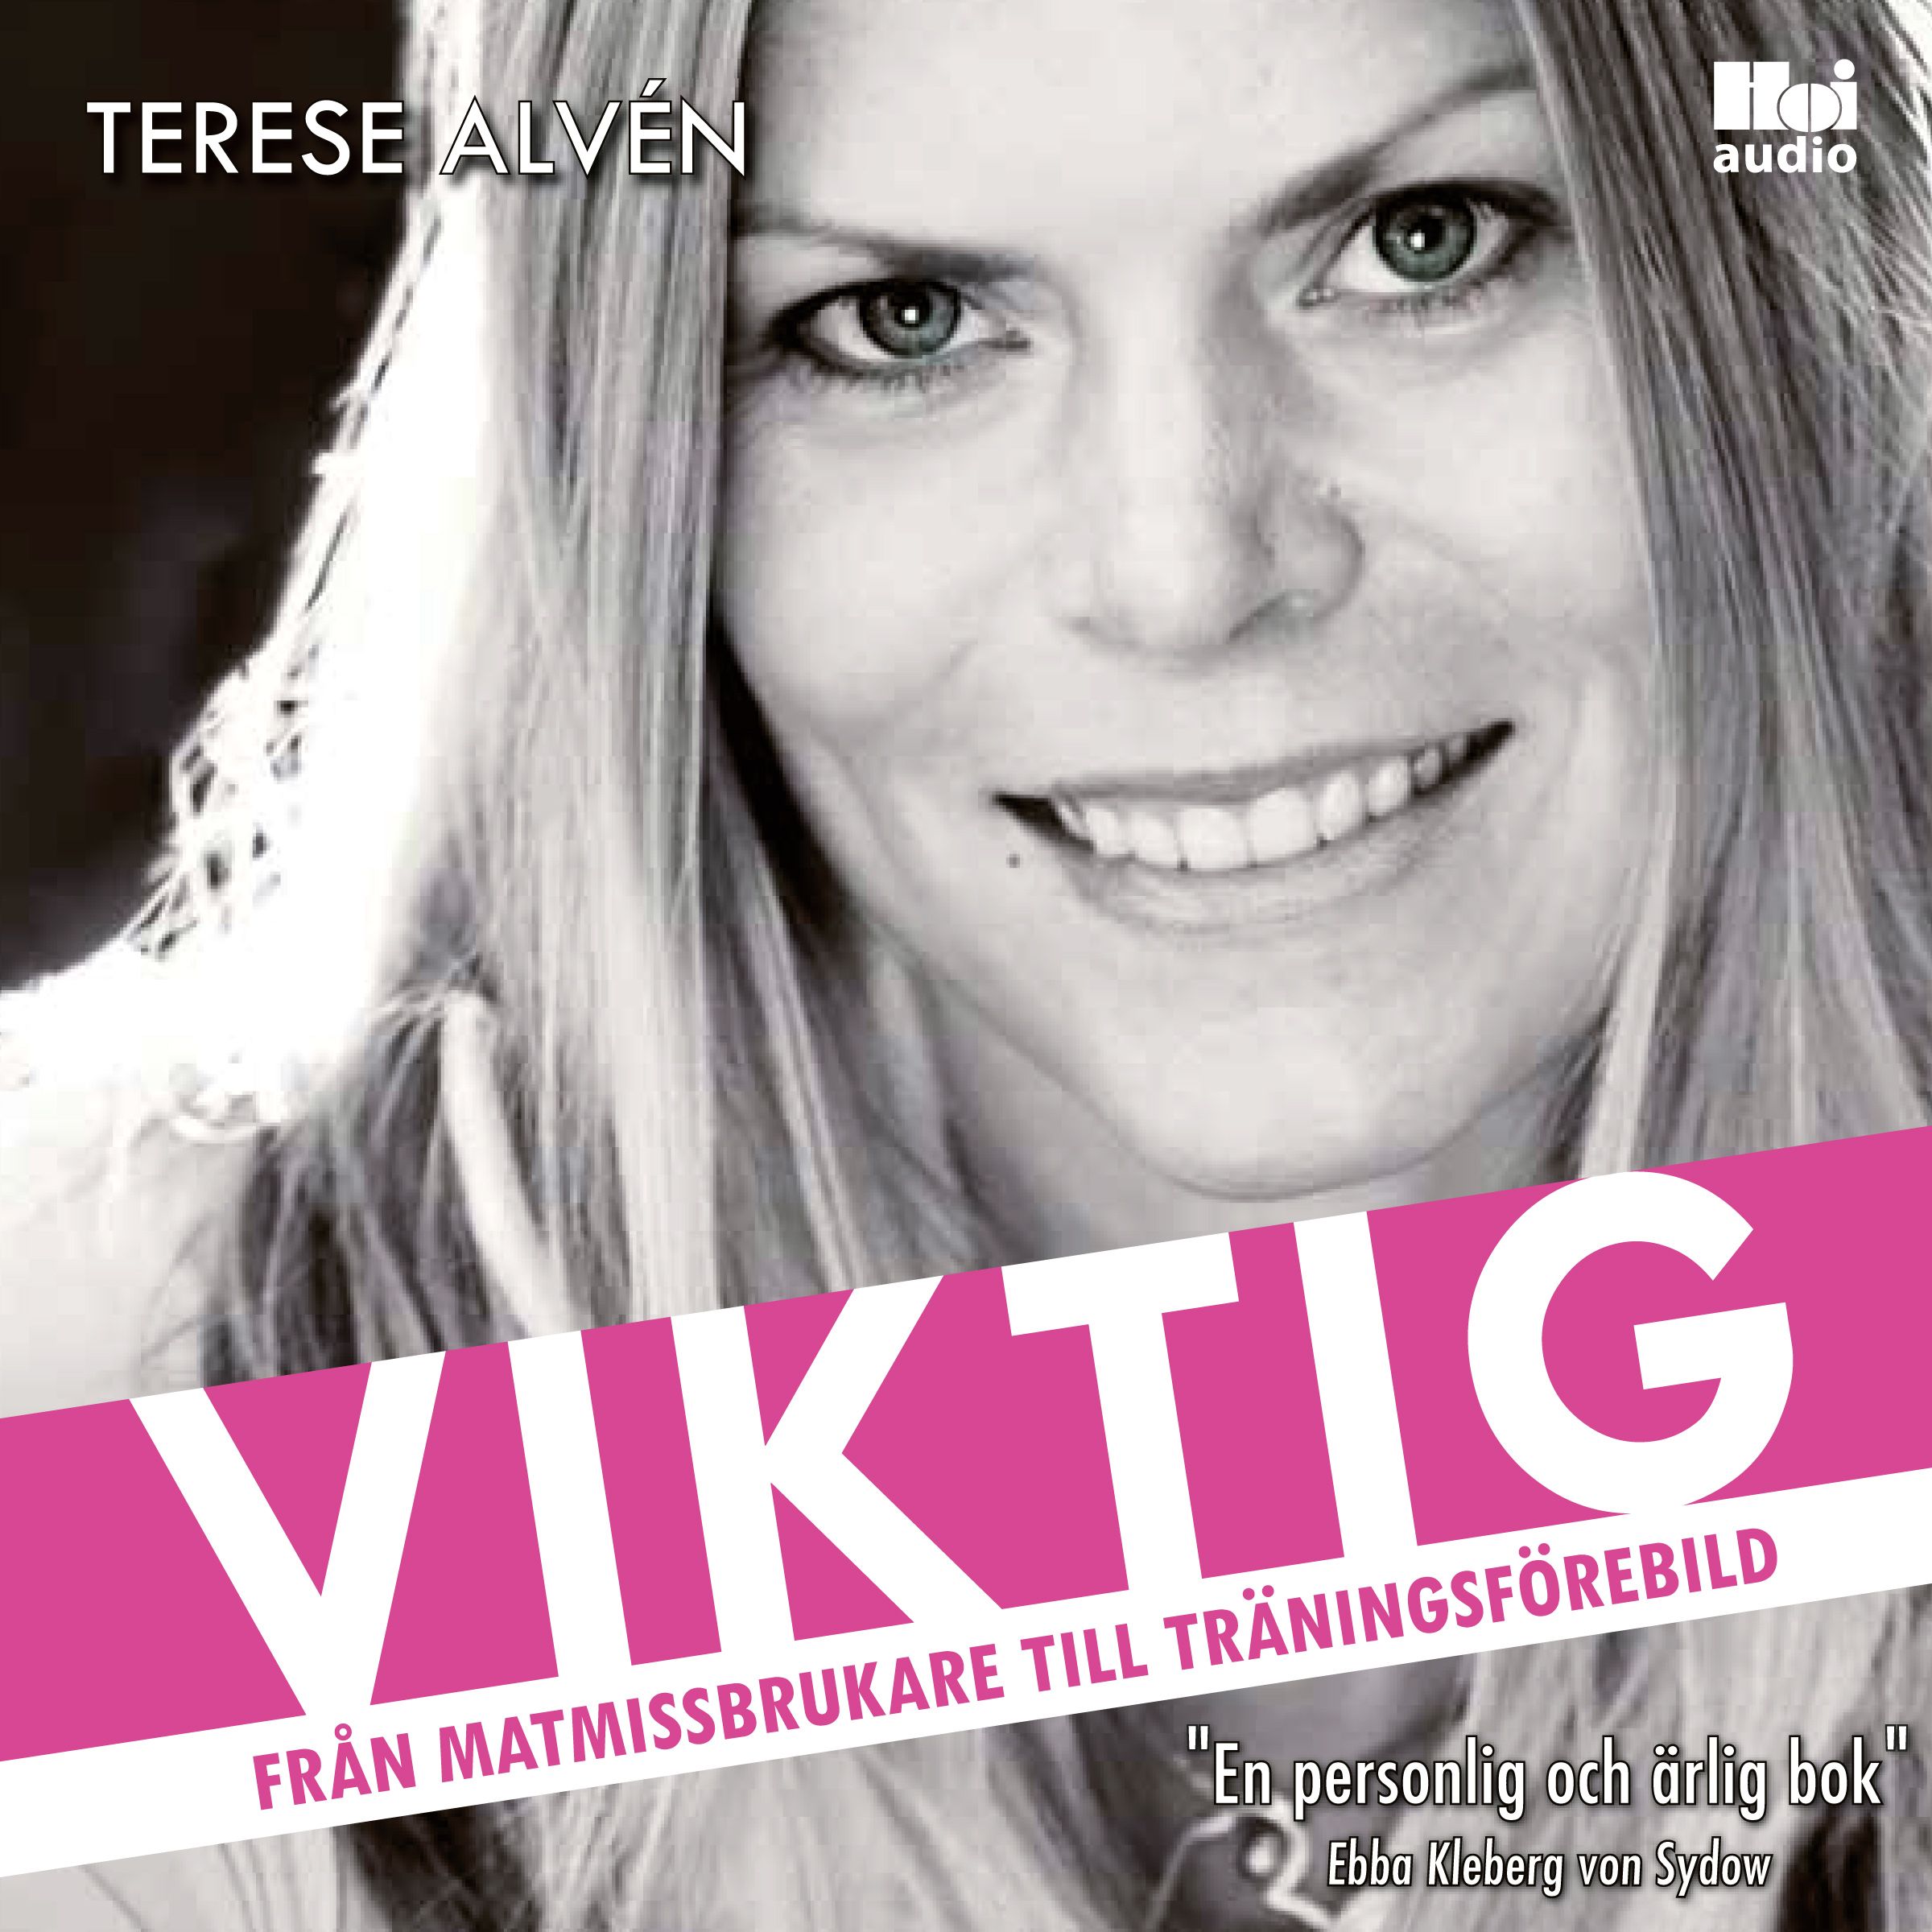 Viktig, audiobook by Terese Alvén